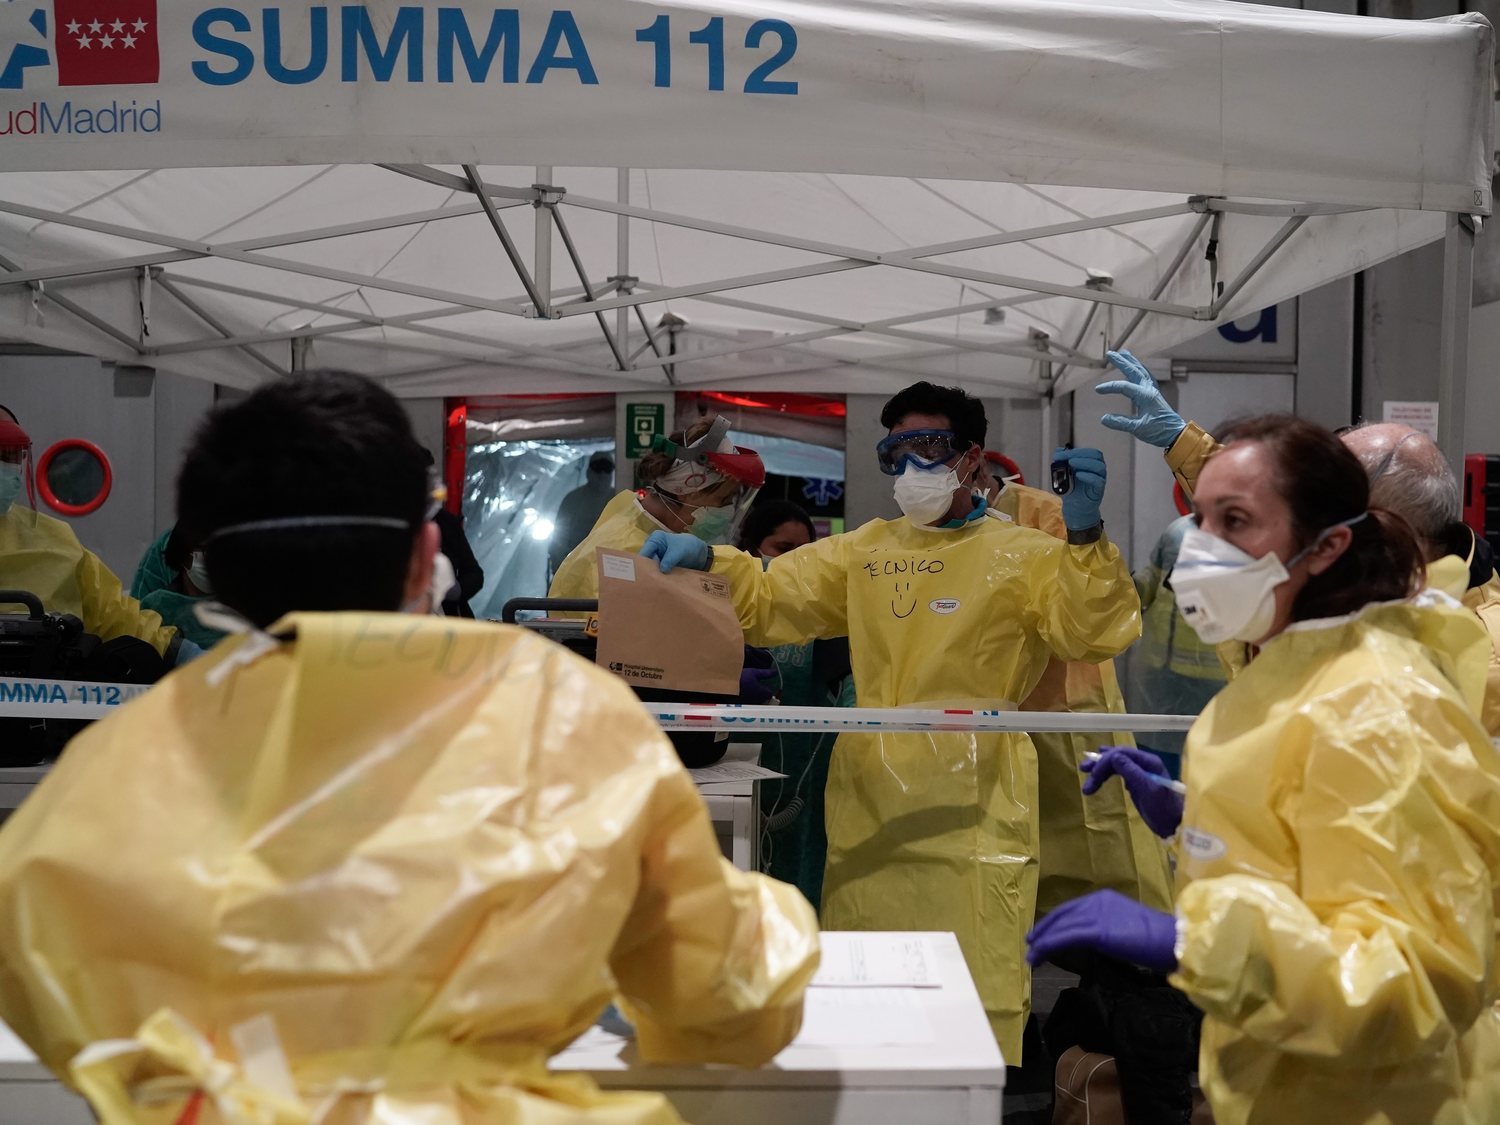 Madrid busca urgentemente médicos, enfermeros y voluntarios para combatir el coronavirus